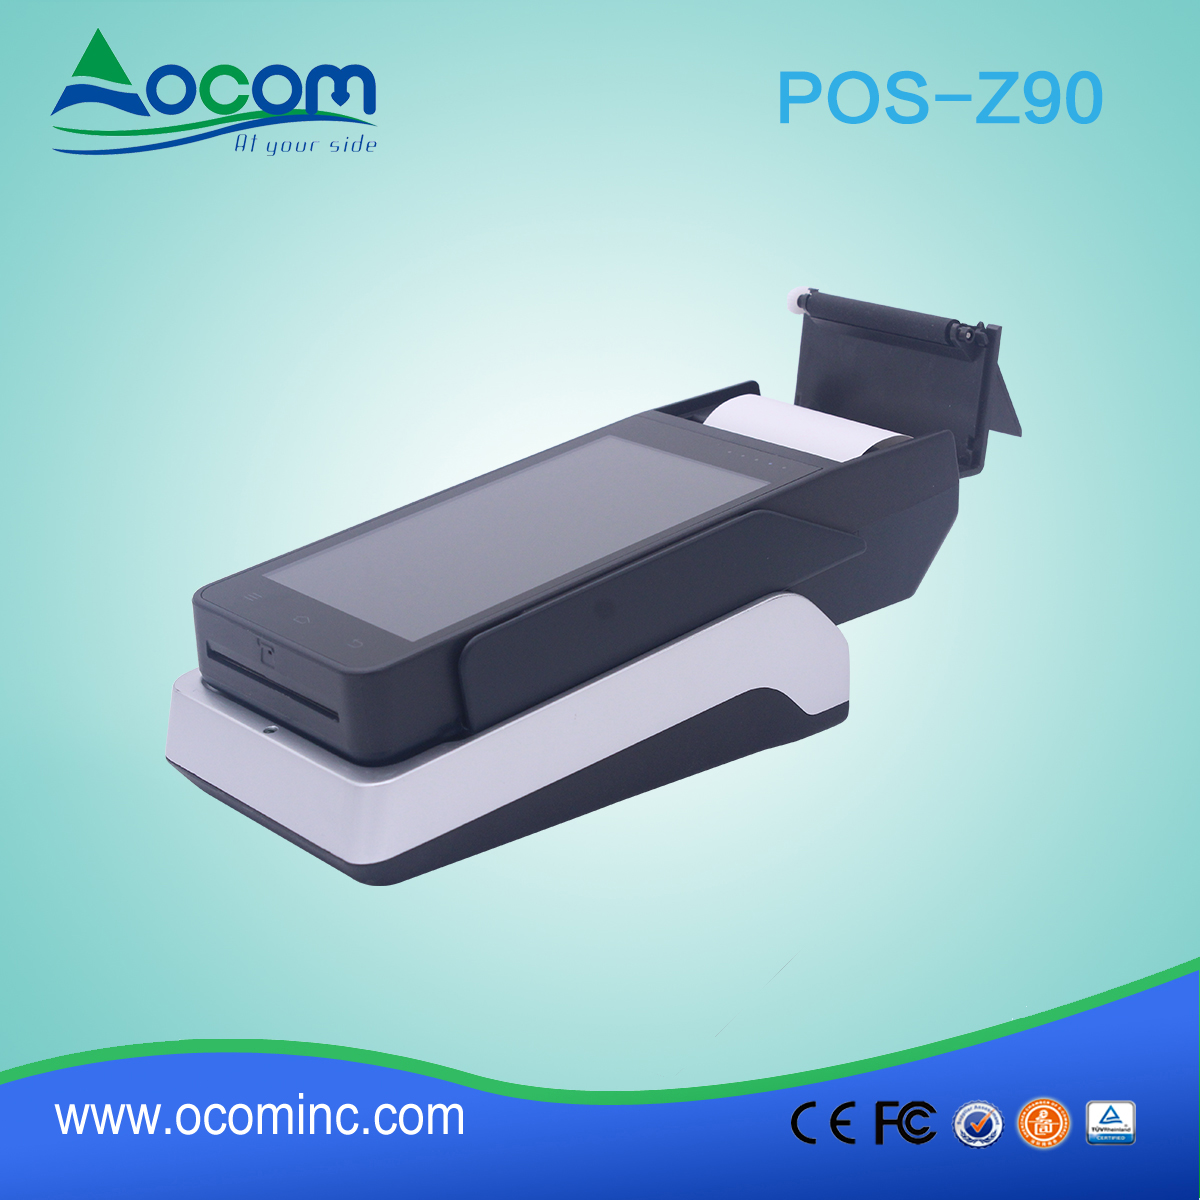 OCOM POS -Z90 wszystko w jednym przenośnym terminalu pos Android z drukarką i czytnikiem nfc